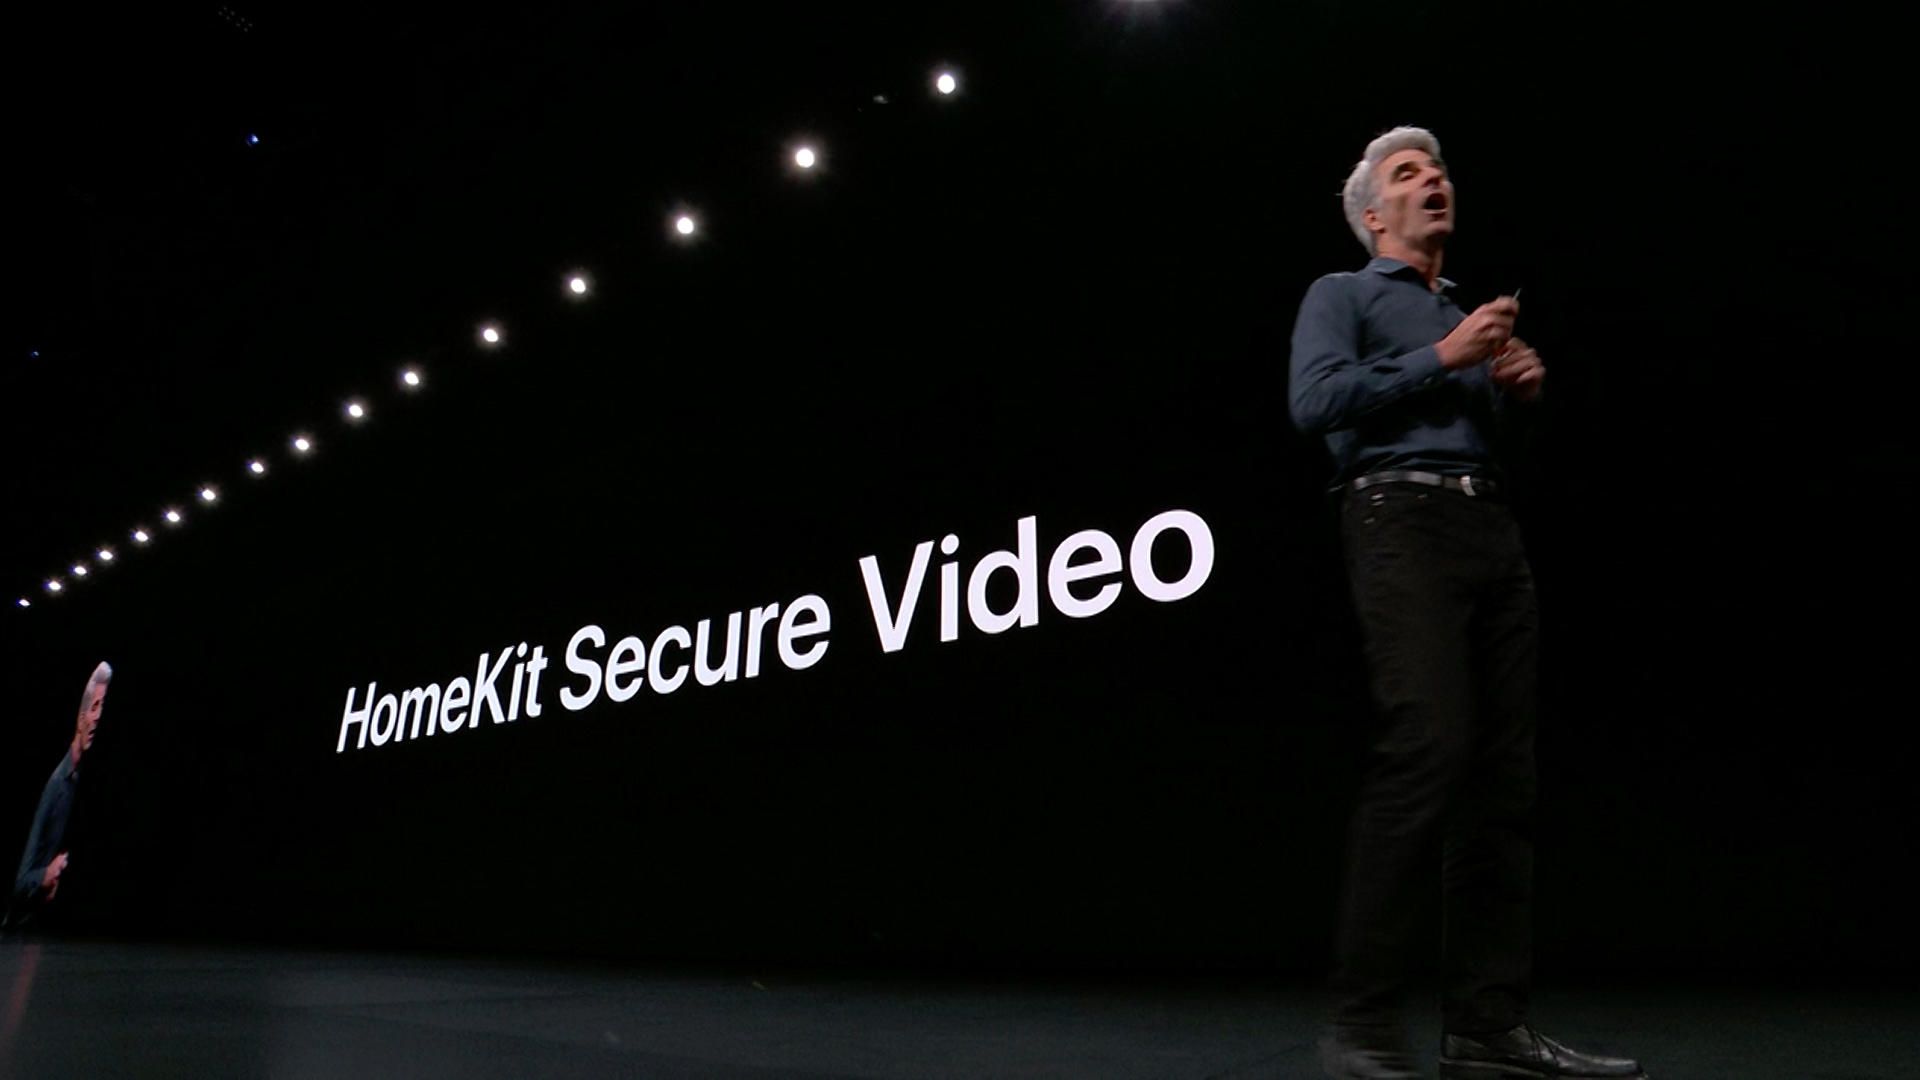 Homekit Video Secure, come funziona la nuova sicurezza Apple per le videocamere domestiche